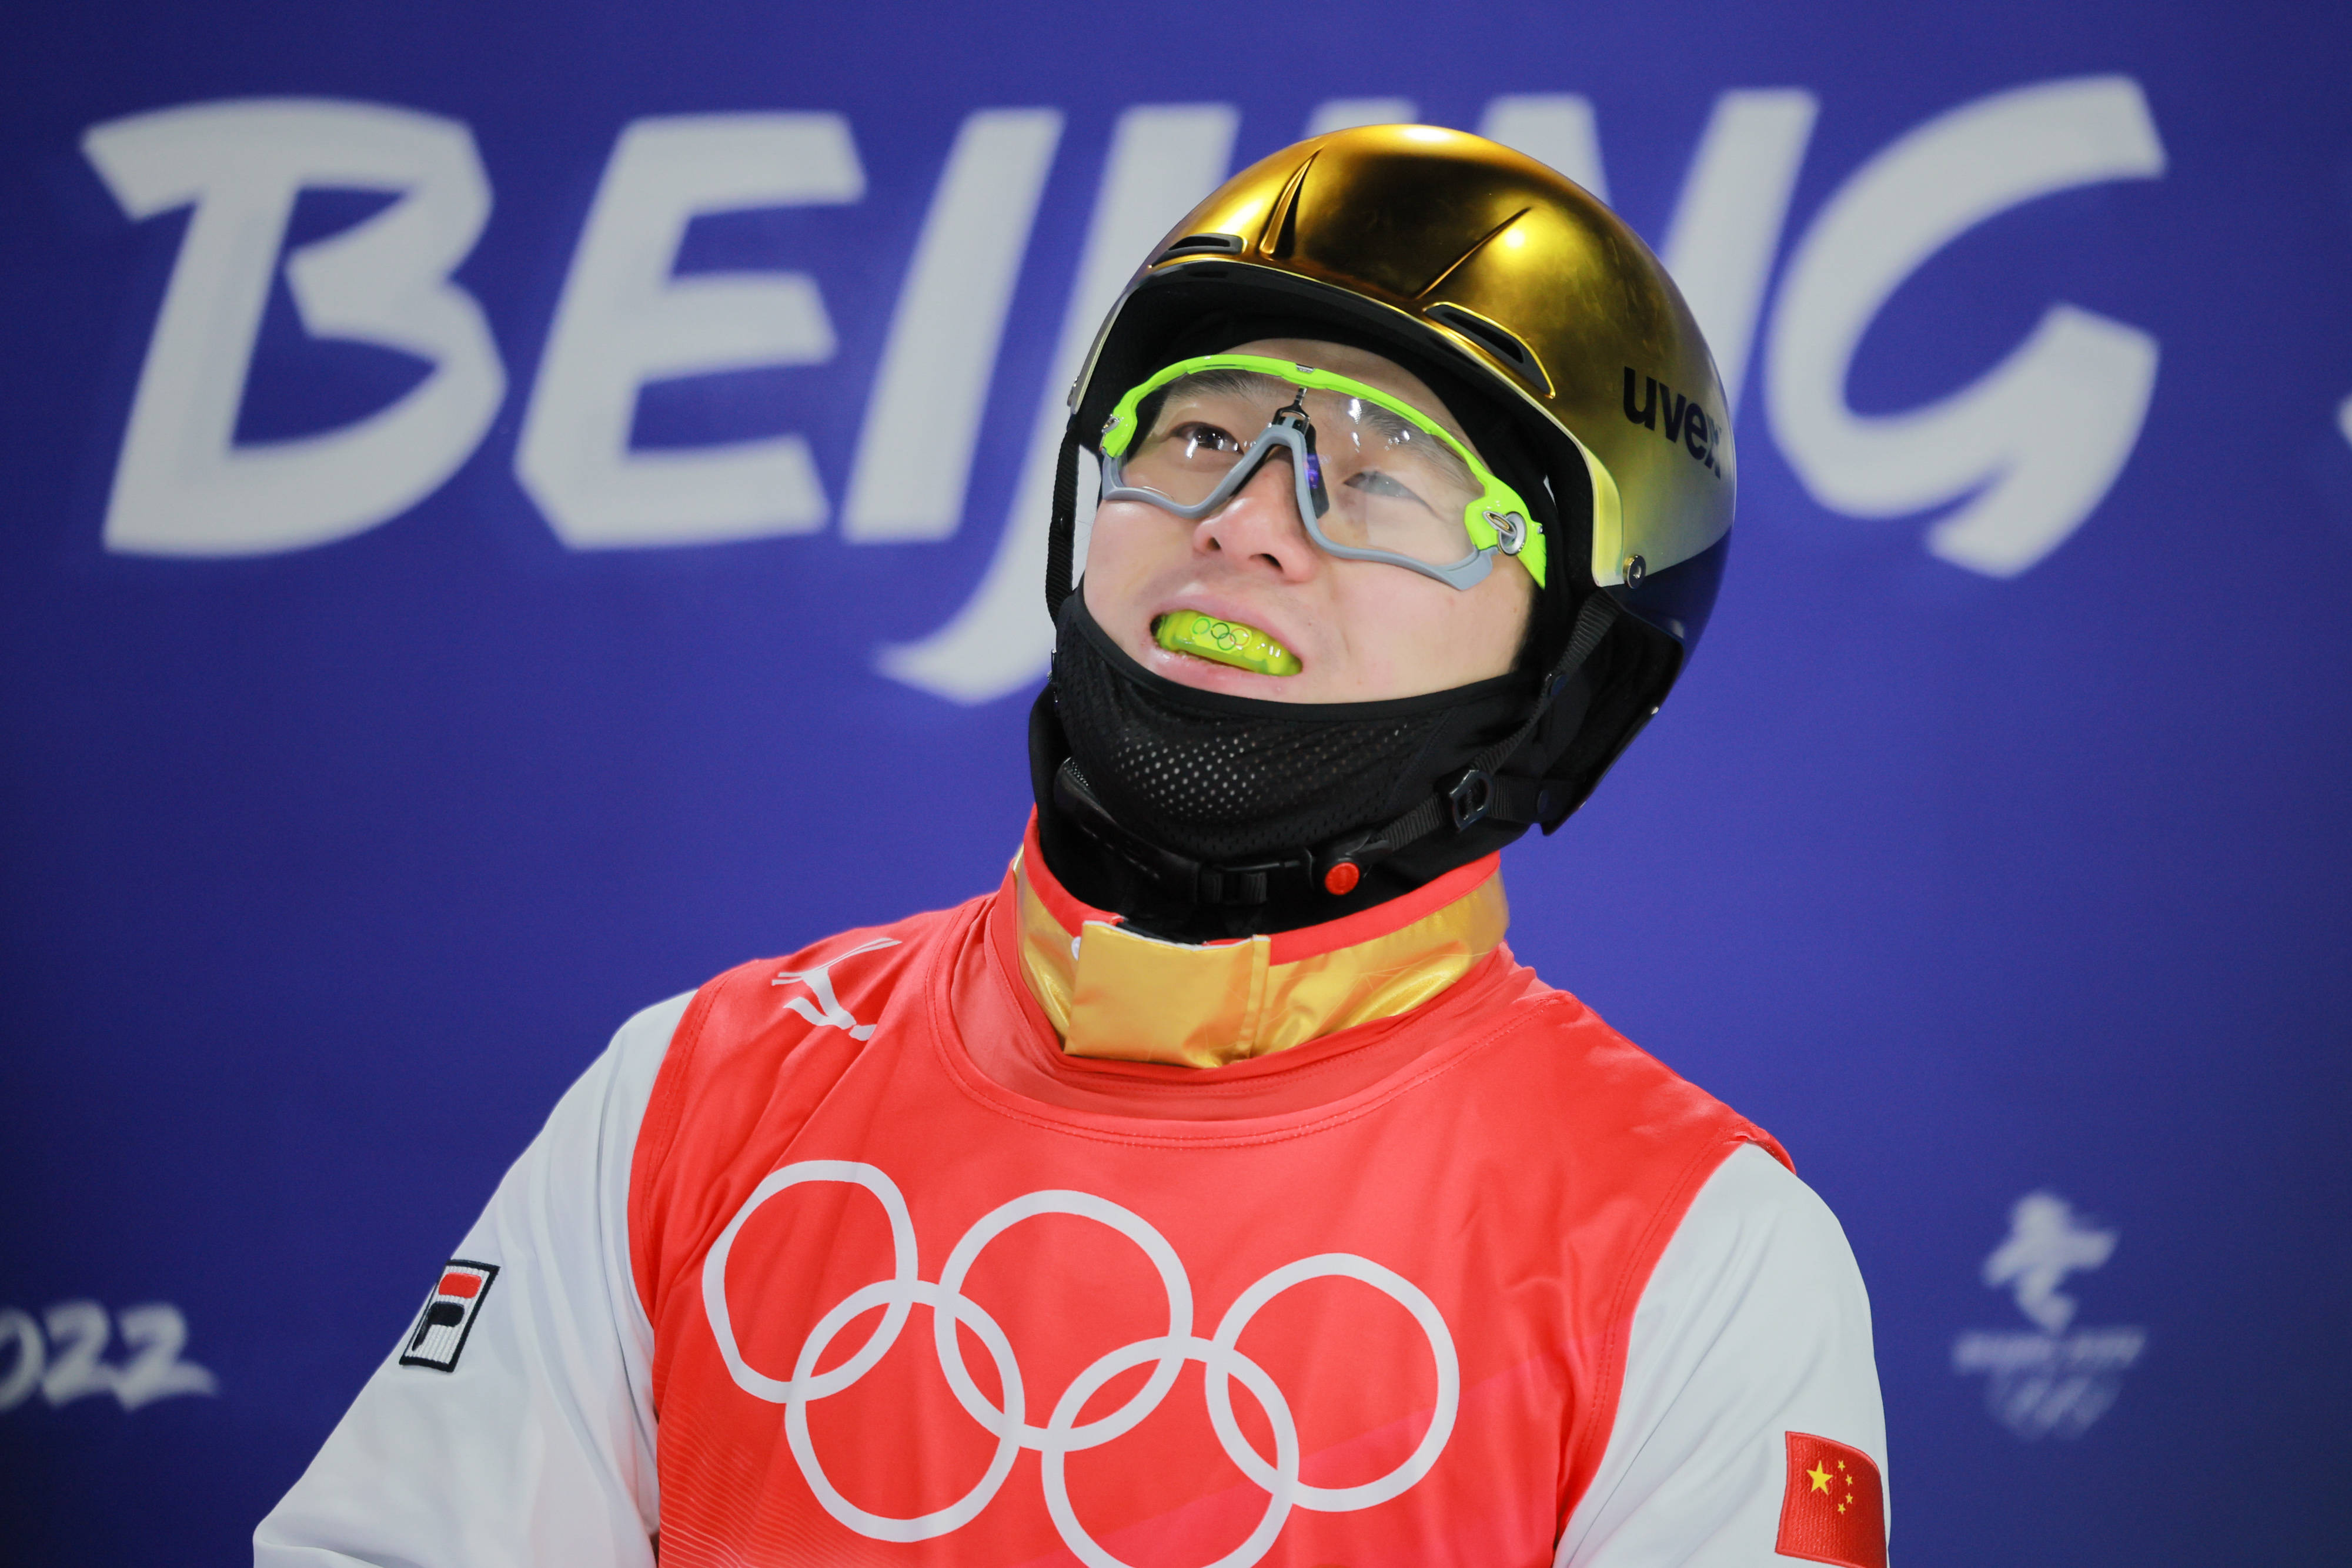 CBA|齐广璞夺得自由式滑雪男子空中技巧金牌 他的奥运五环牙套亮了